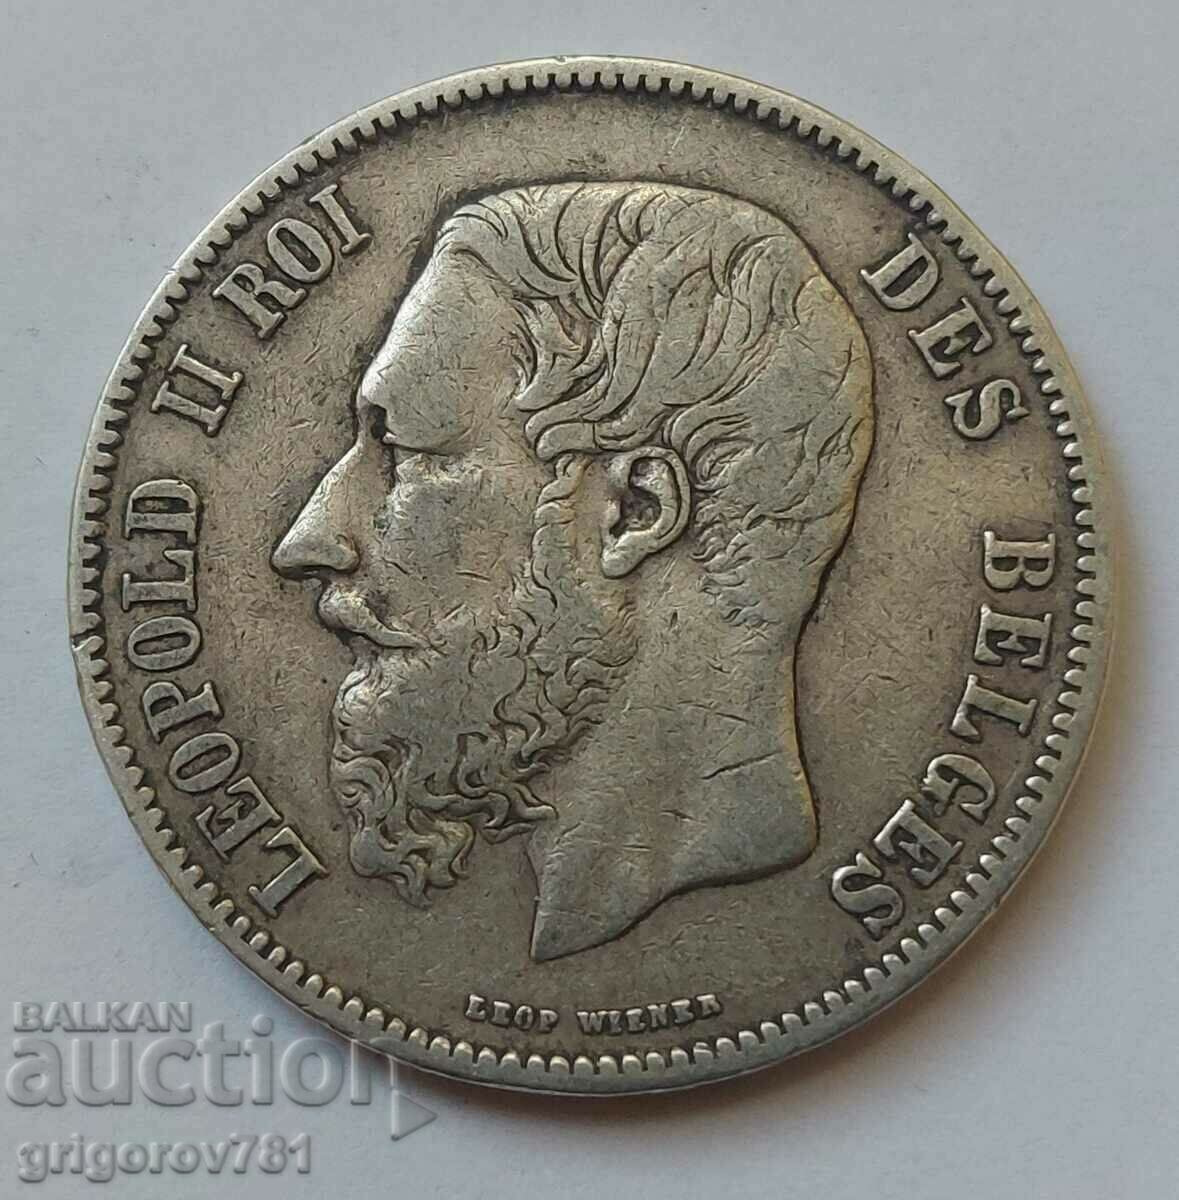 5 Francs Silver Belgium 1868 Silver Coin #156